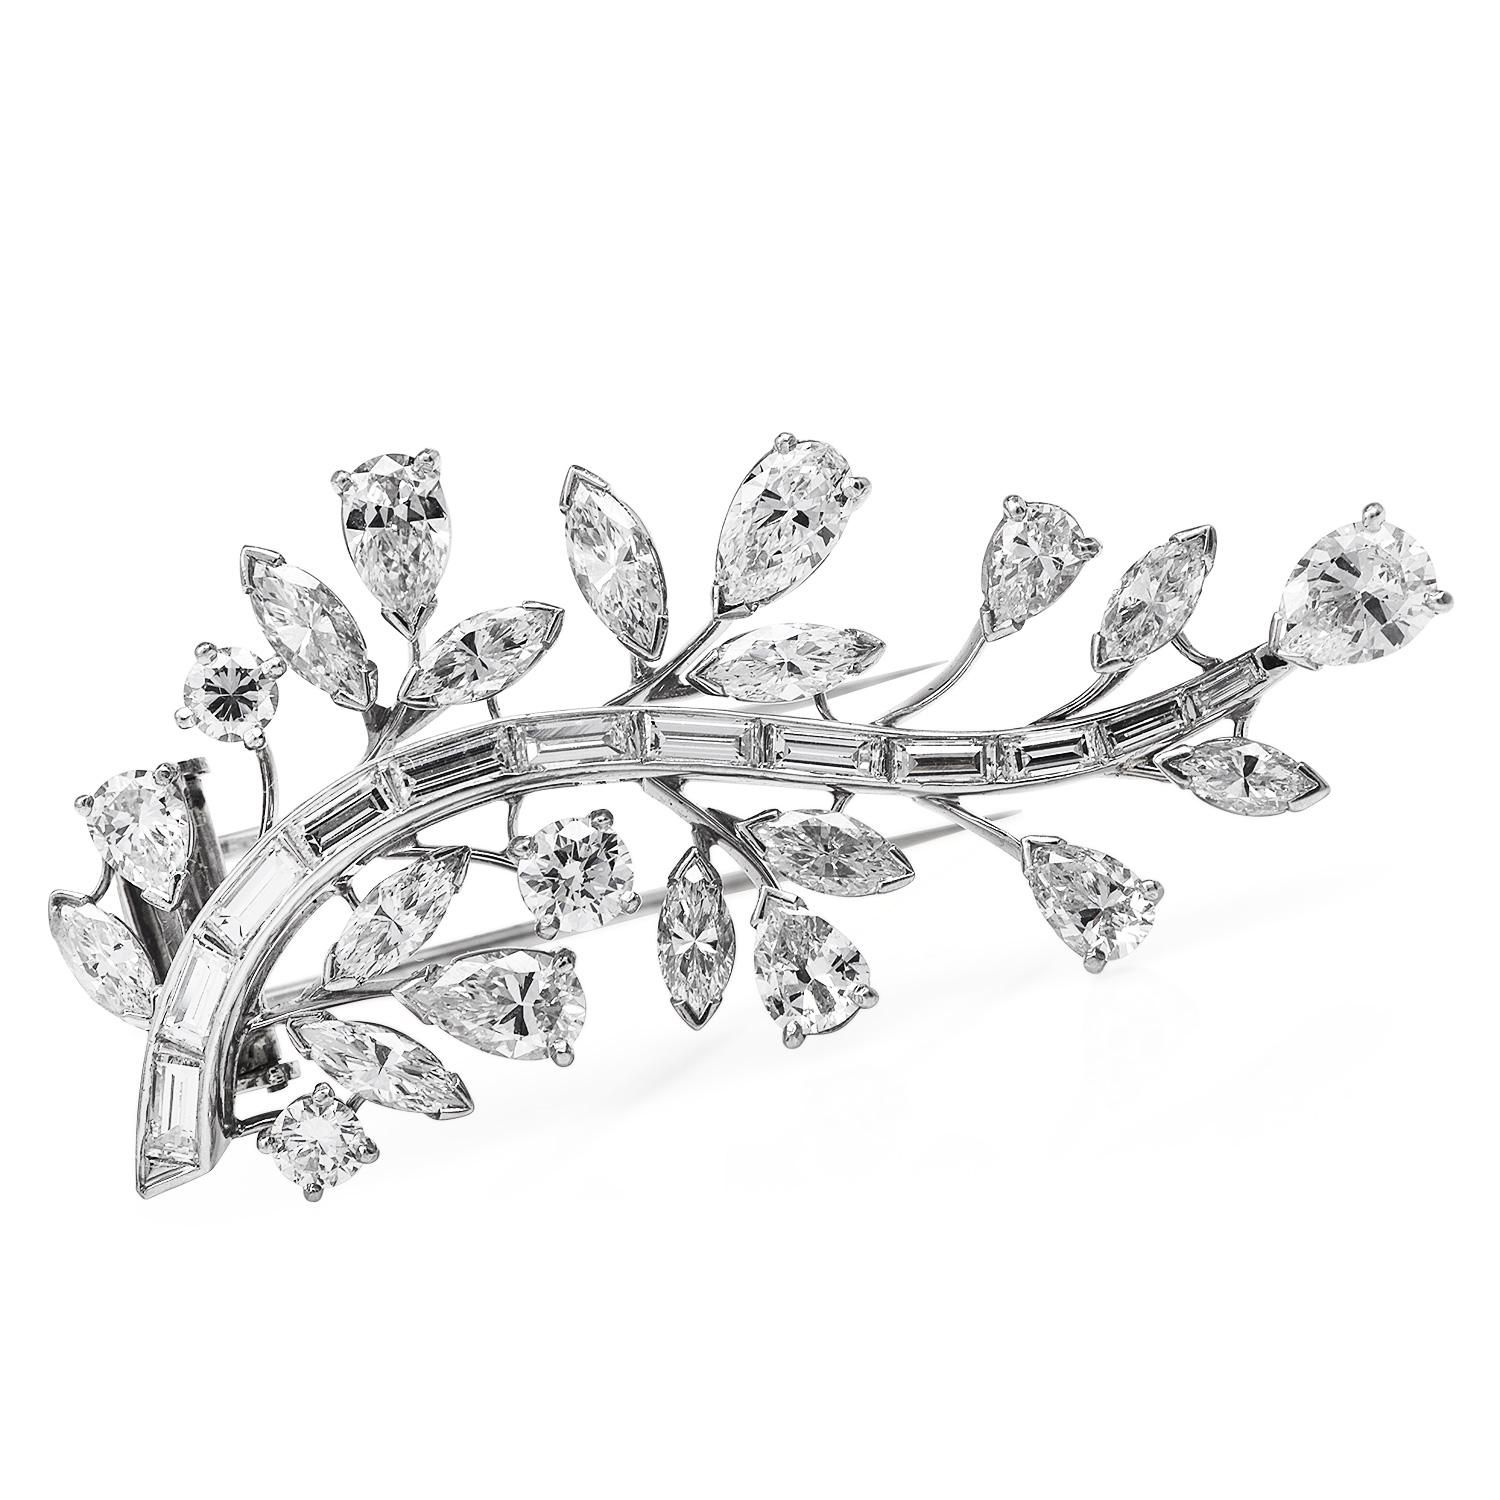 Lassen Sie sich von dieser Vintage Cartier Diamond Platinum Botanical Pin Brosche verzaubern

Exquisit aus massivem Platin gefertigtes botanisches Muster, signiert Cartier.

Diese atemberaubende Vintage-Pin ist mit abgedeckt:

(3) runde Diamanten in